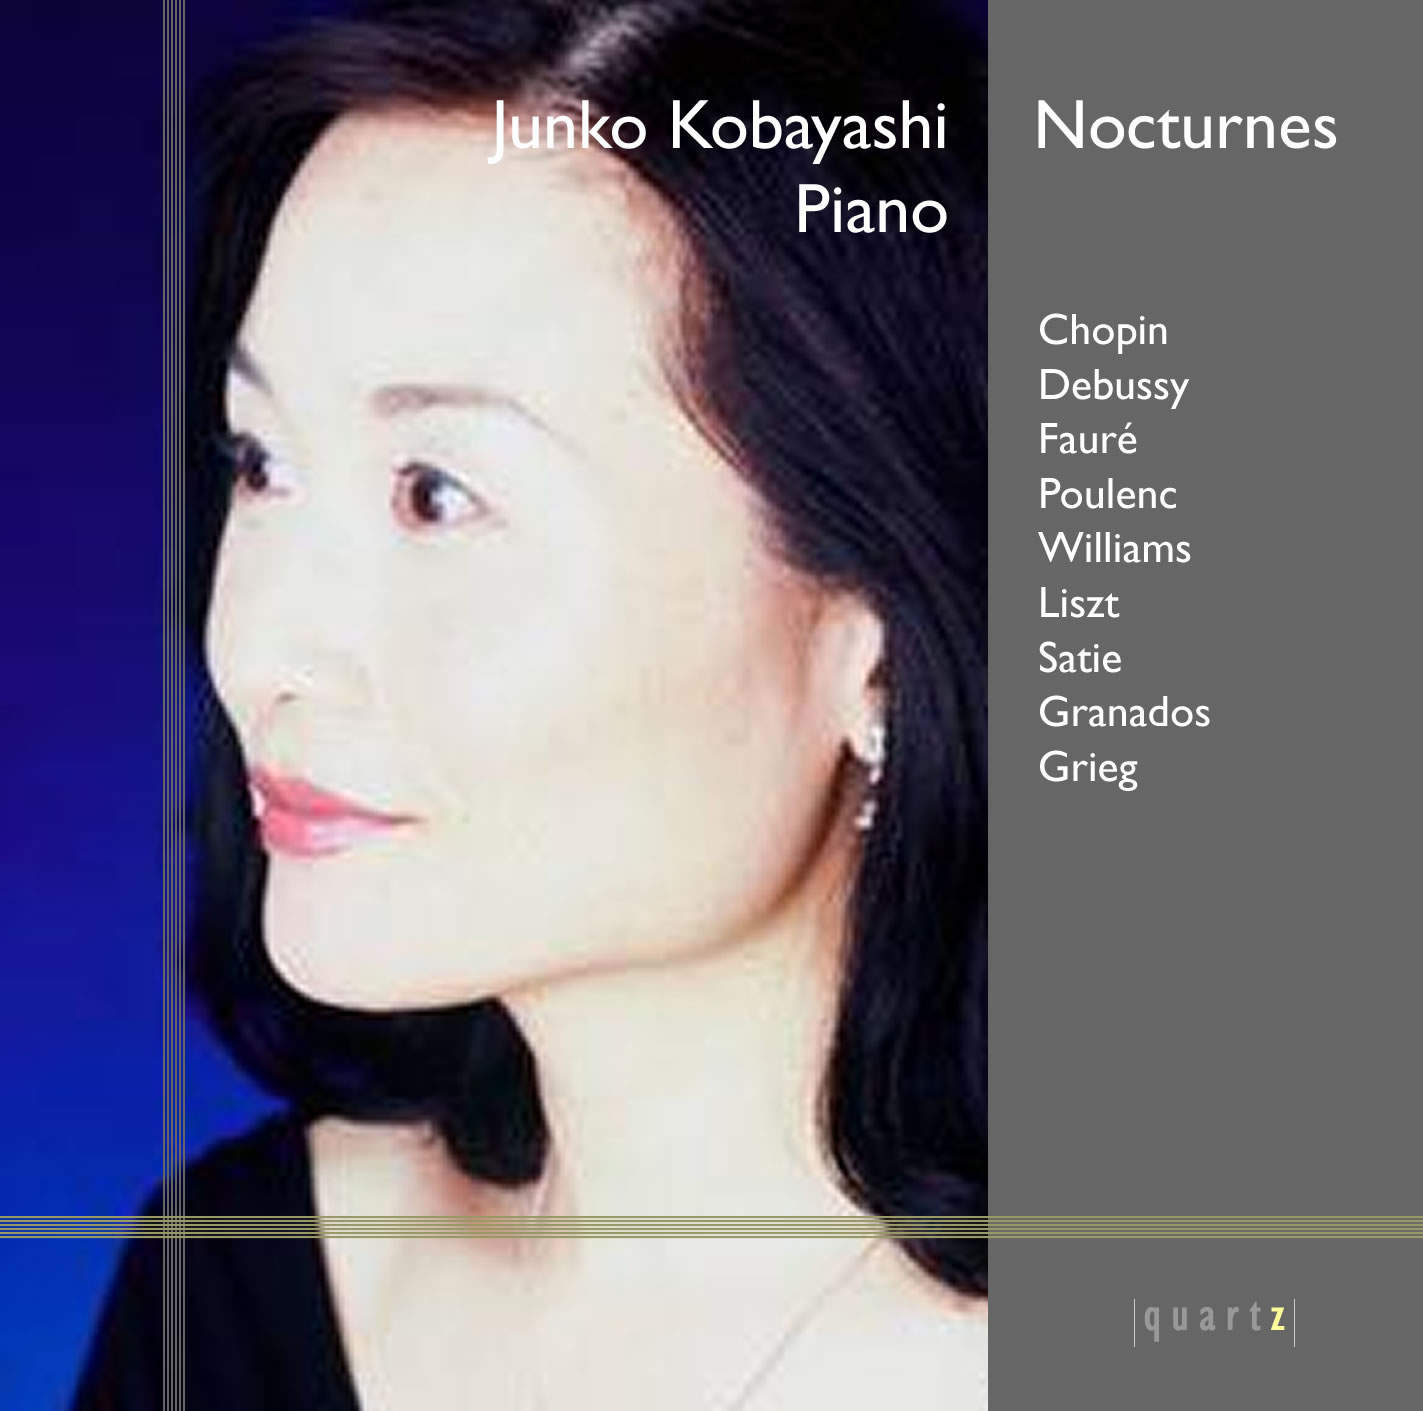 Junko Kobayashi (piano)